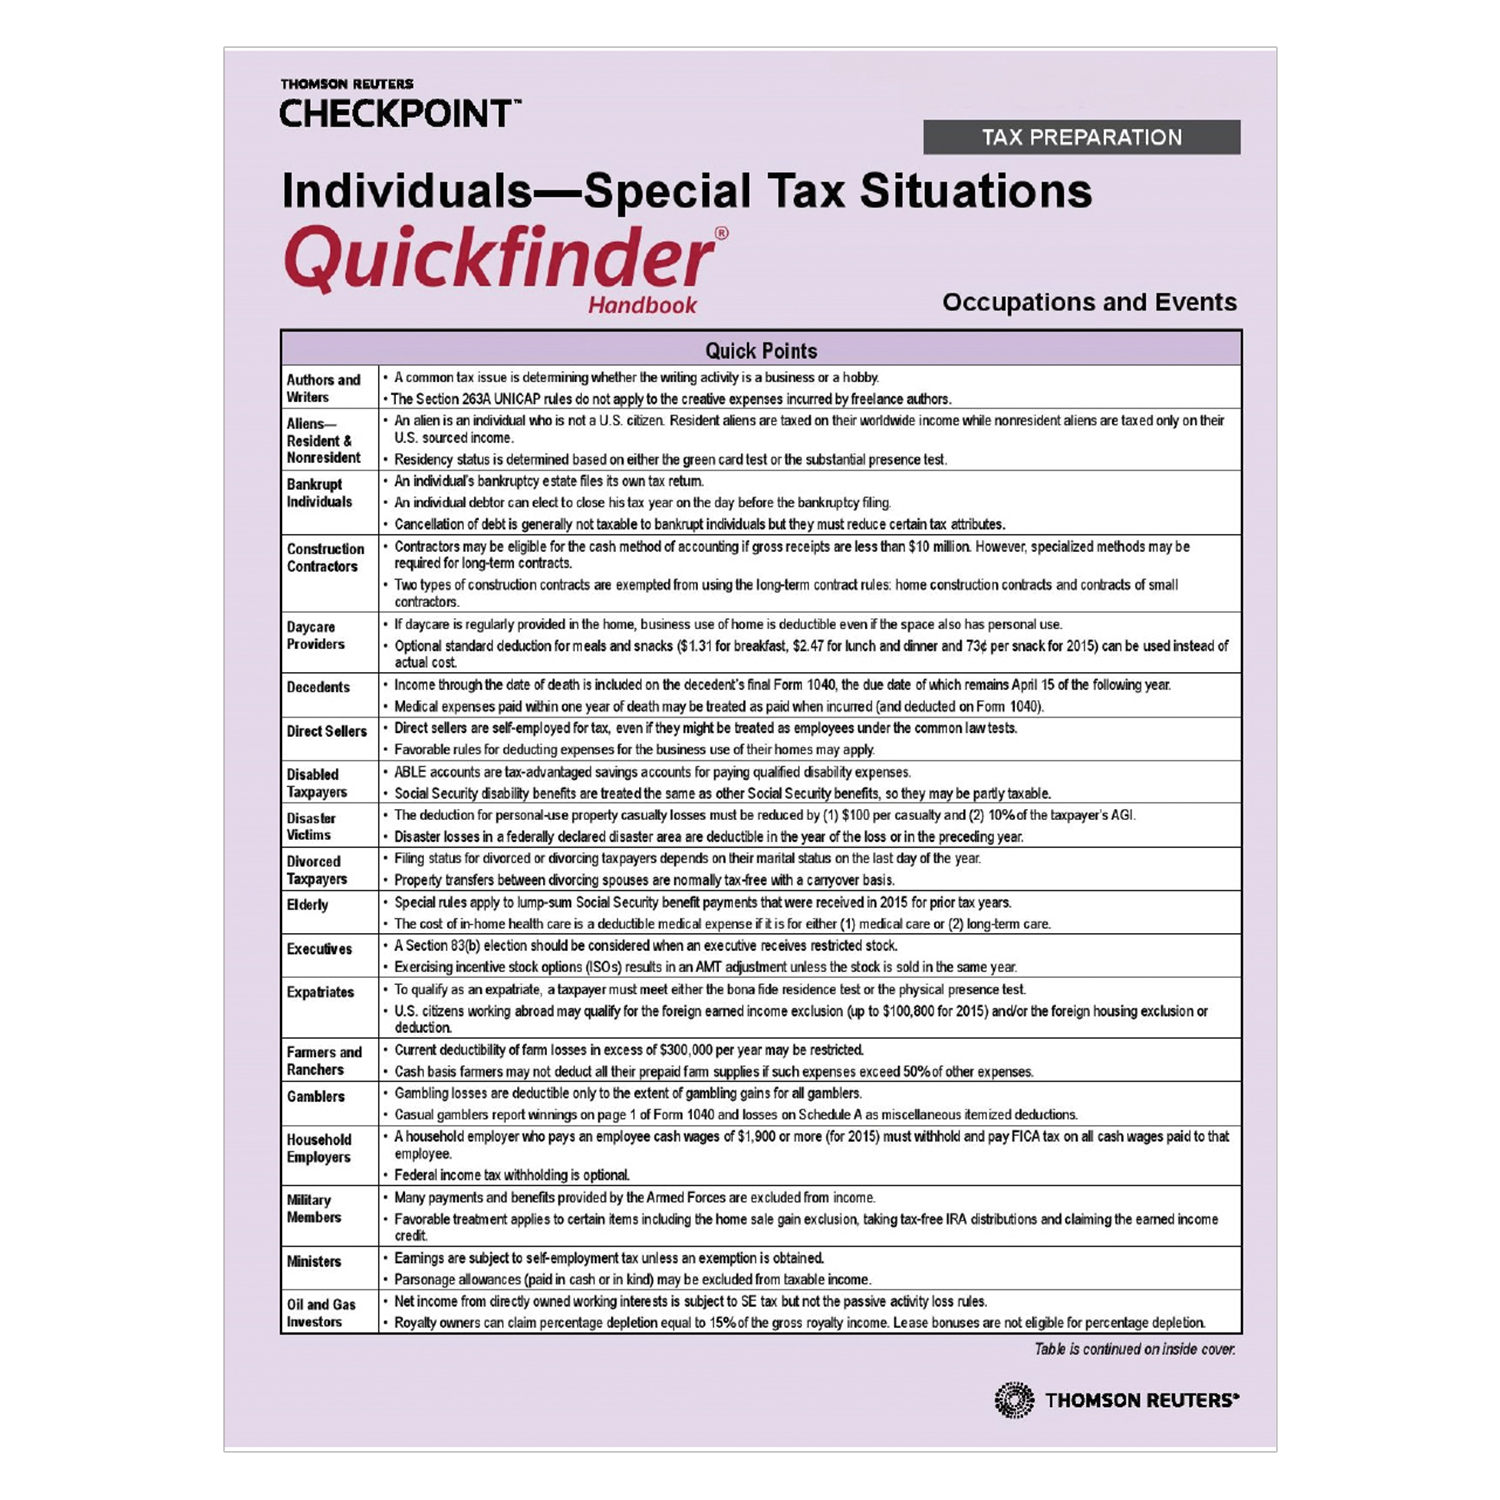 Individuals – Special Tax Situations Quickfinder Handbook (2019) - #3940 